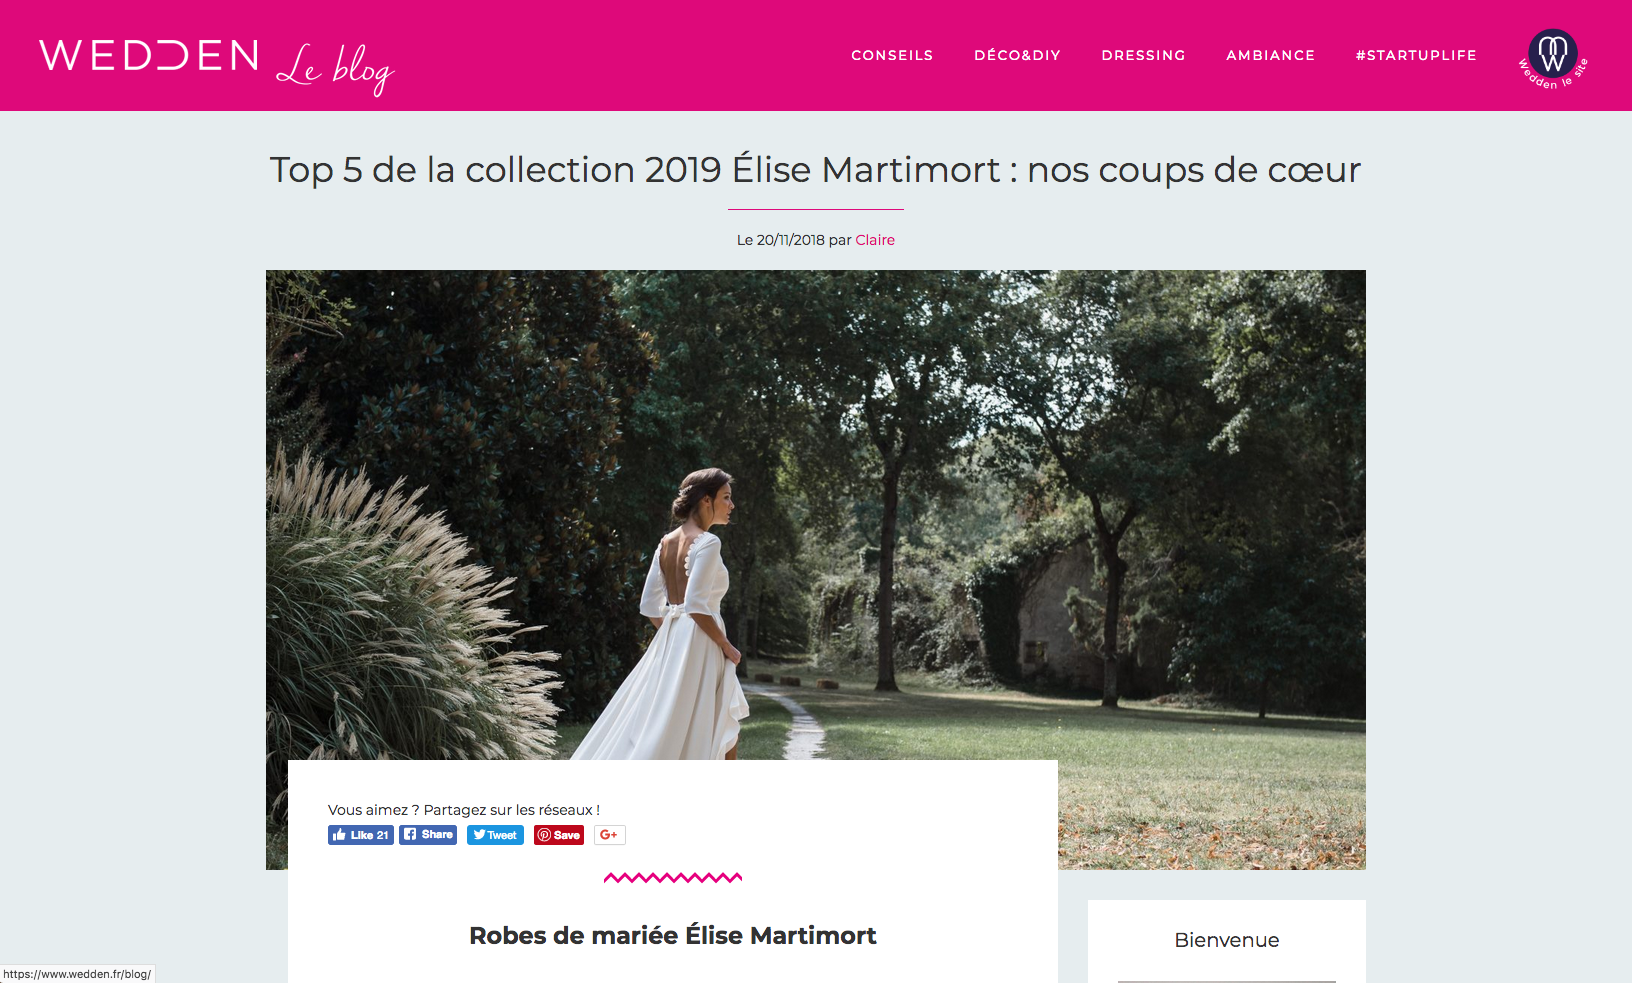 Top 5 de la collection 2019 Élise Martimort : nos coups de cœur